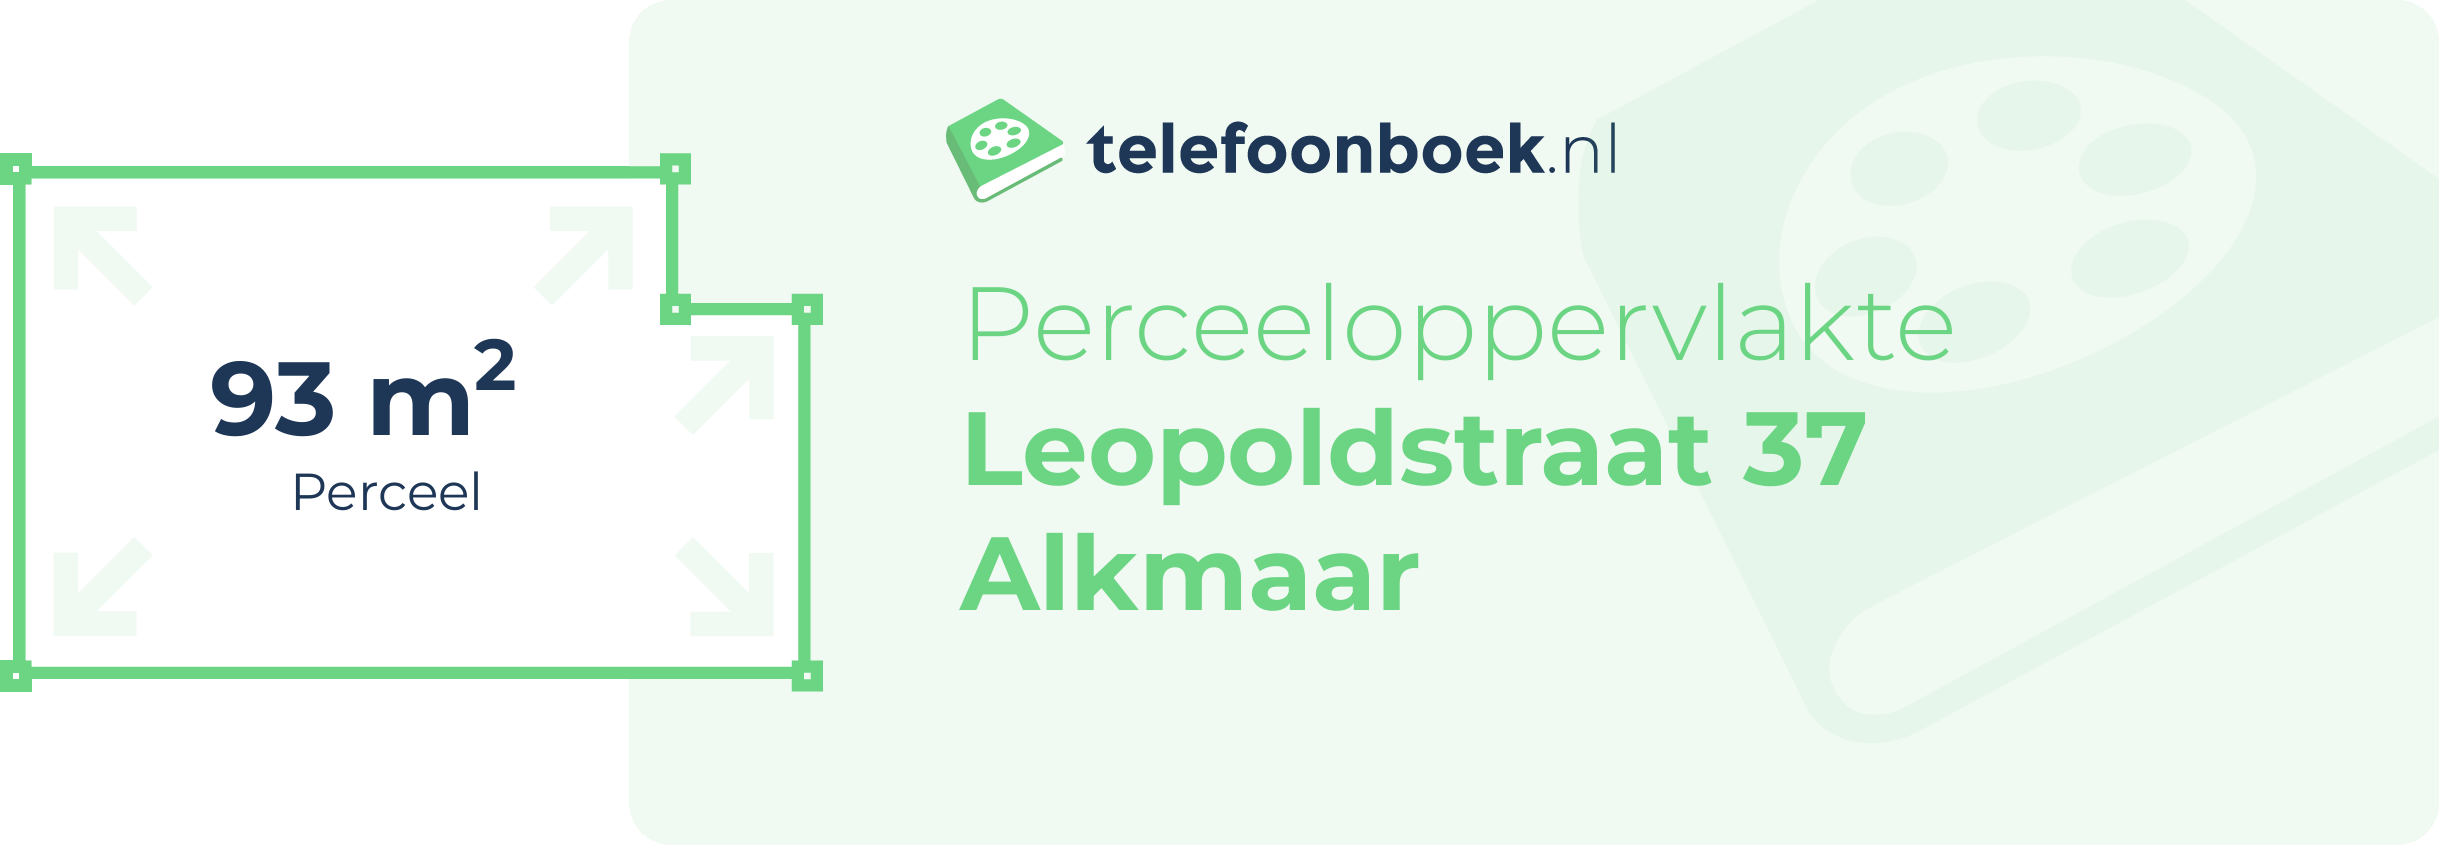 Perceeloppervlakte Leopoldstraat 37 Alkmaar